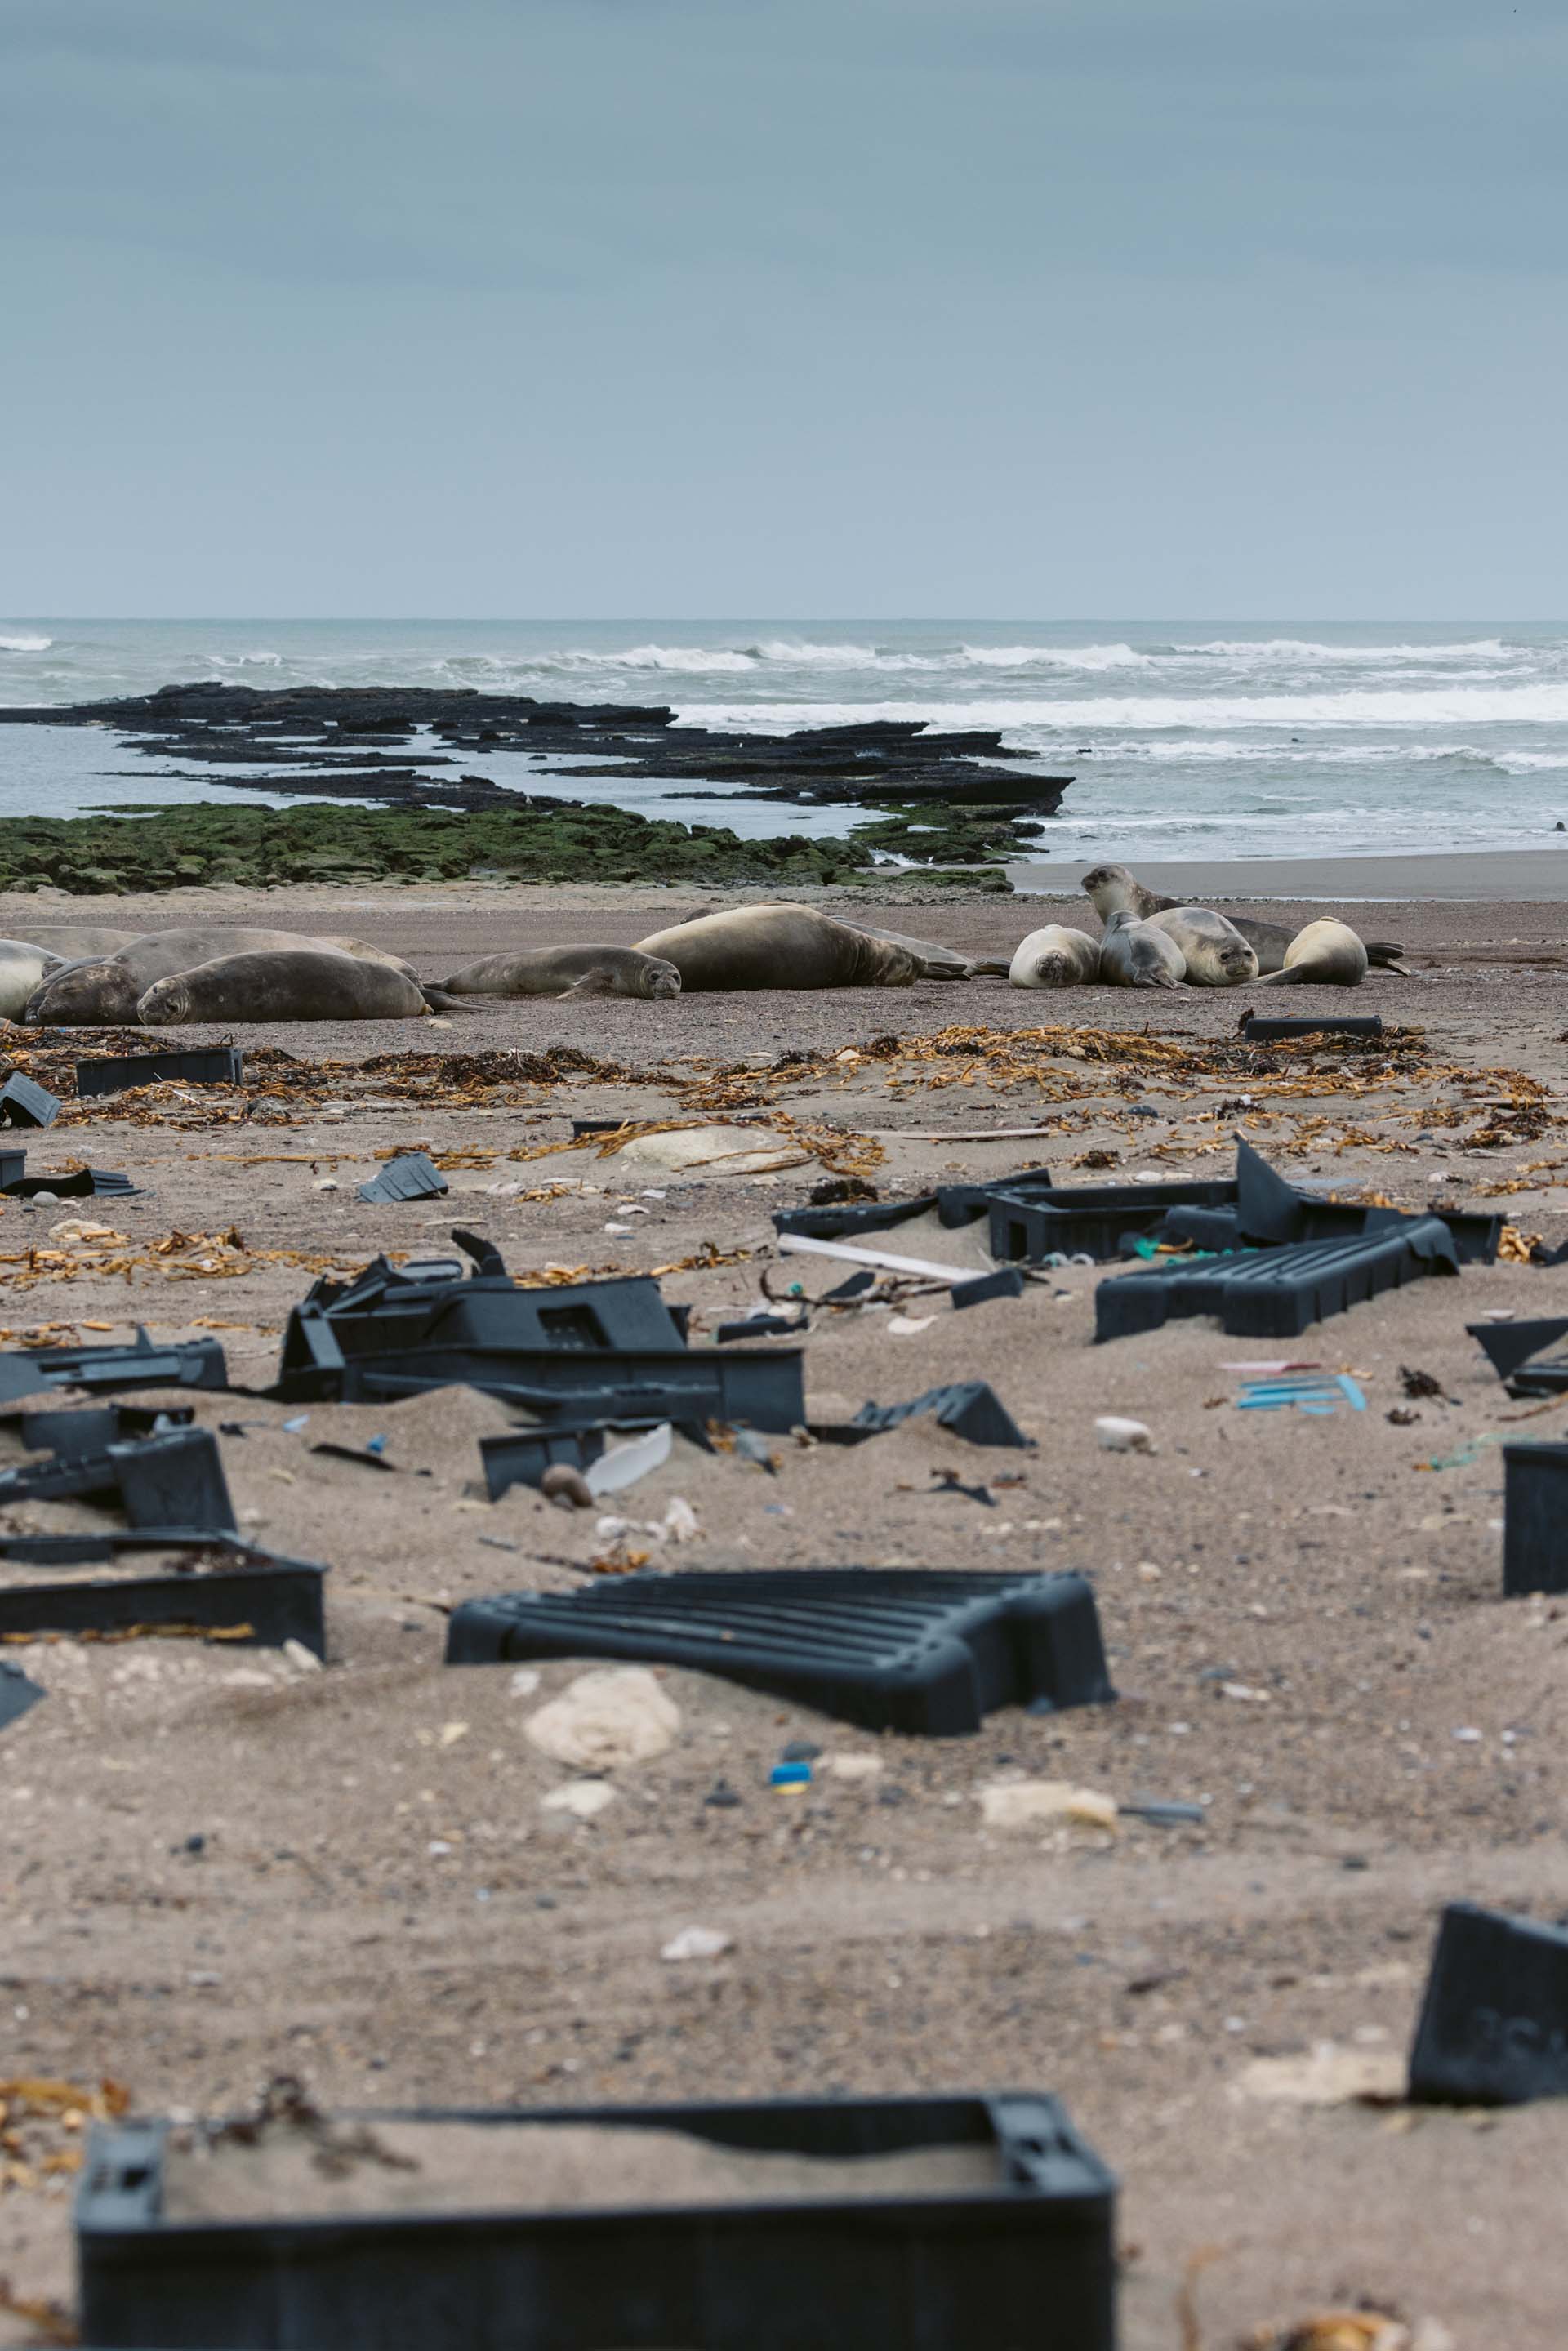 "Pude presenciar, junto a mi equipo, la interacción entre elefantes marinos y cajones plásticos y calculamos alrededor de 20 toneladas de residuos en una sola playa cercana a la localidad de Puerto Madryn” (Yago Lange)